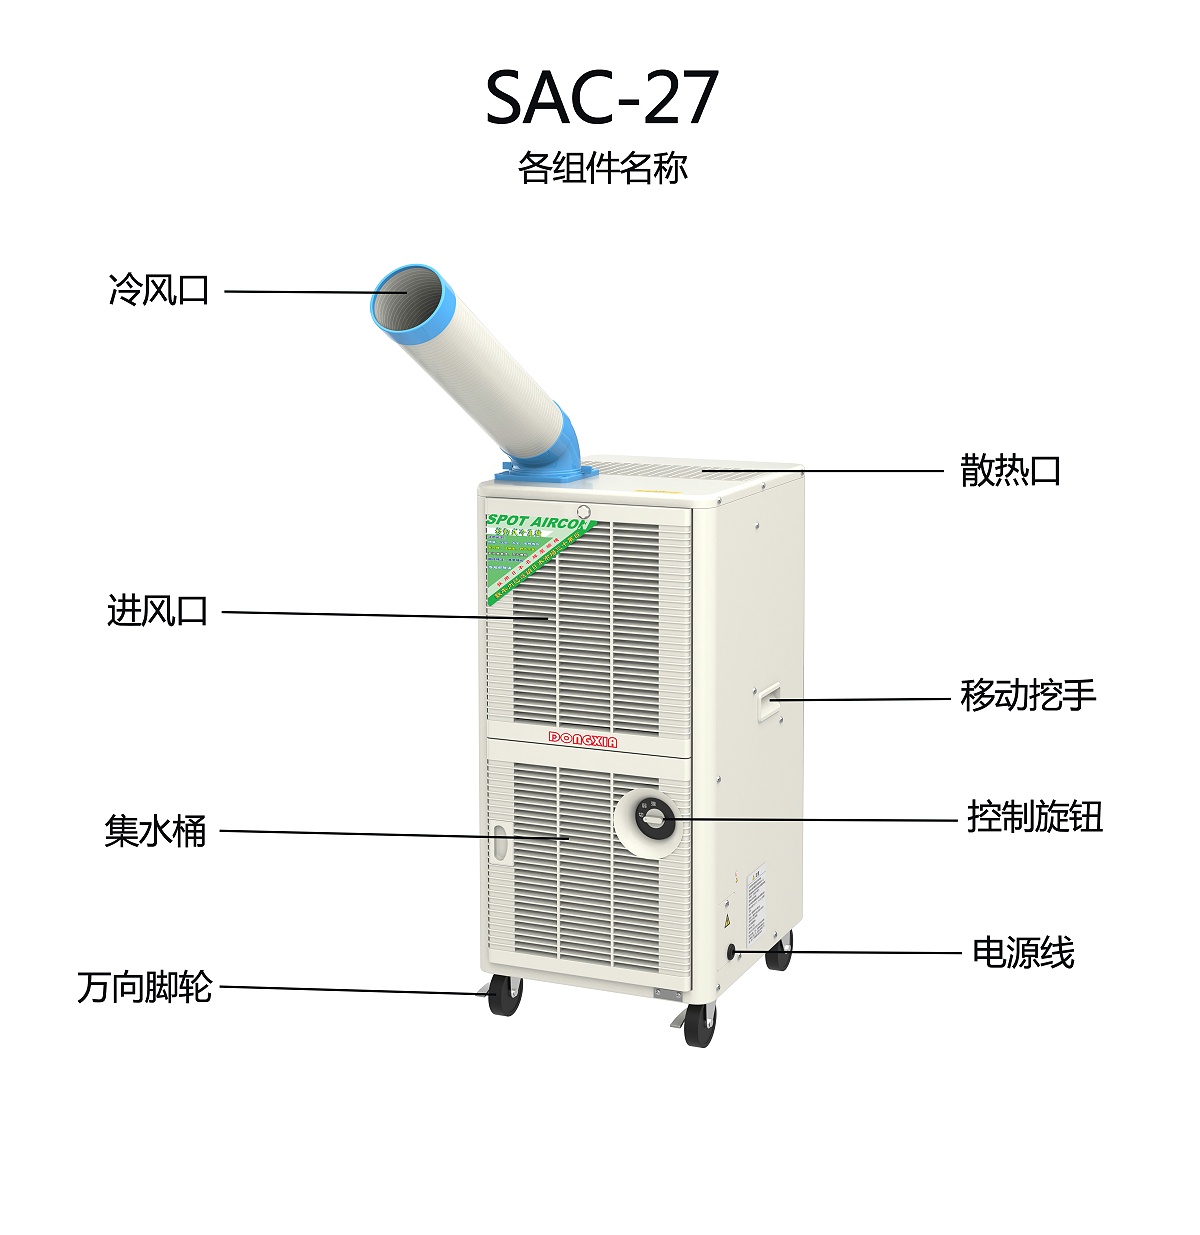 SAC-27各组件名称